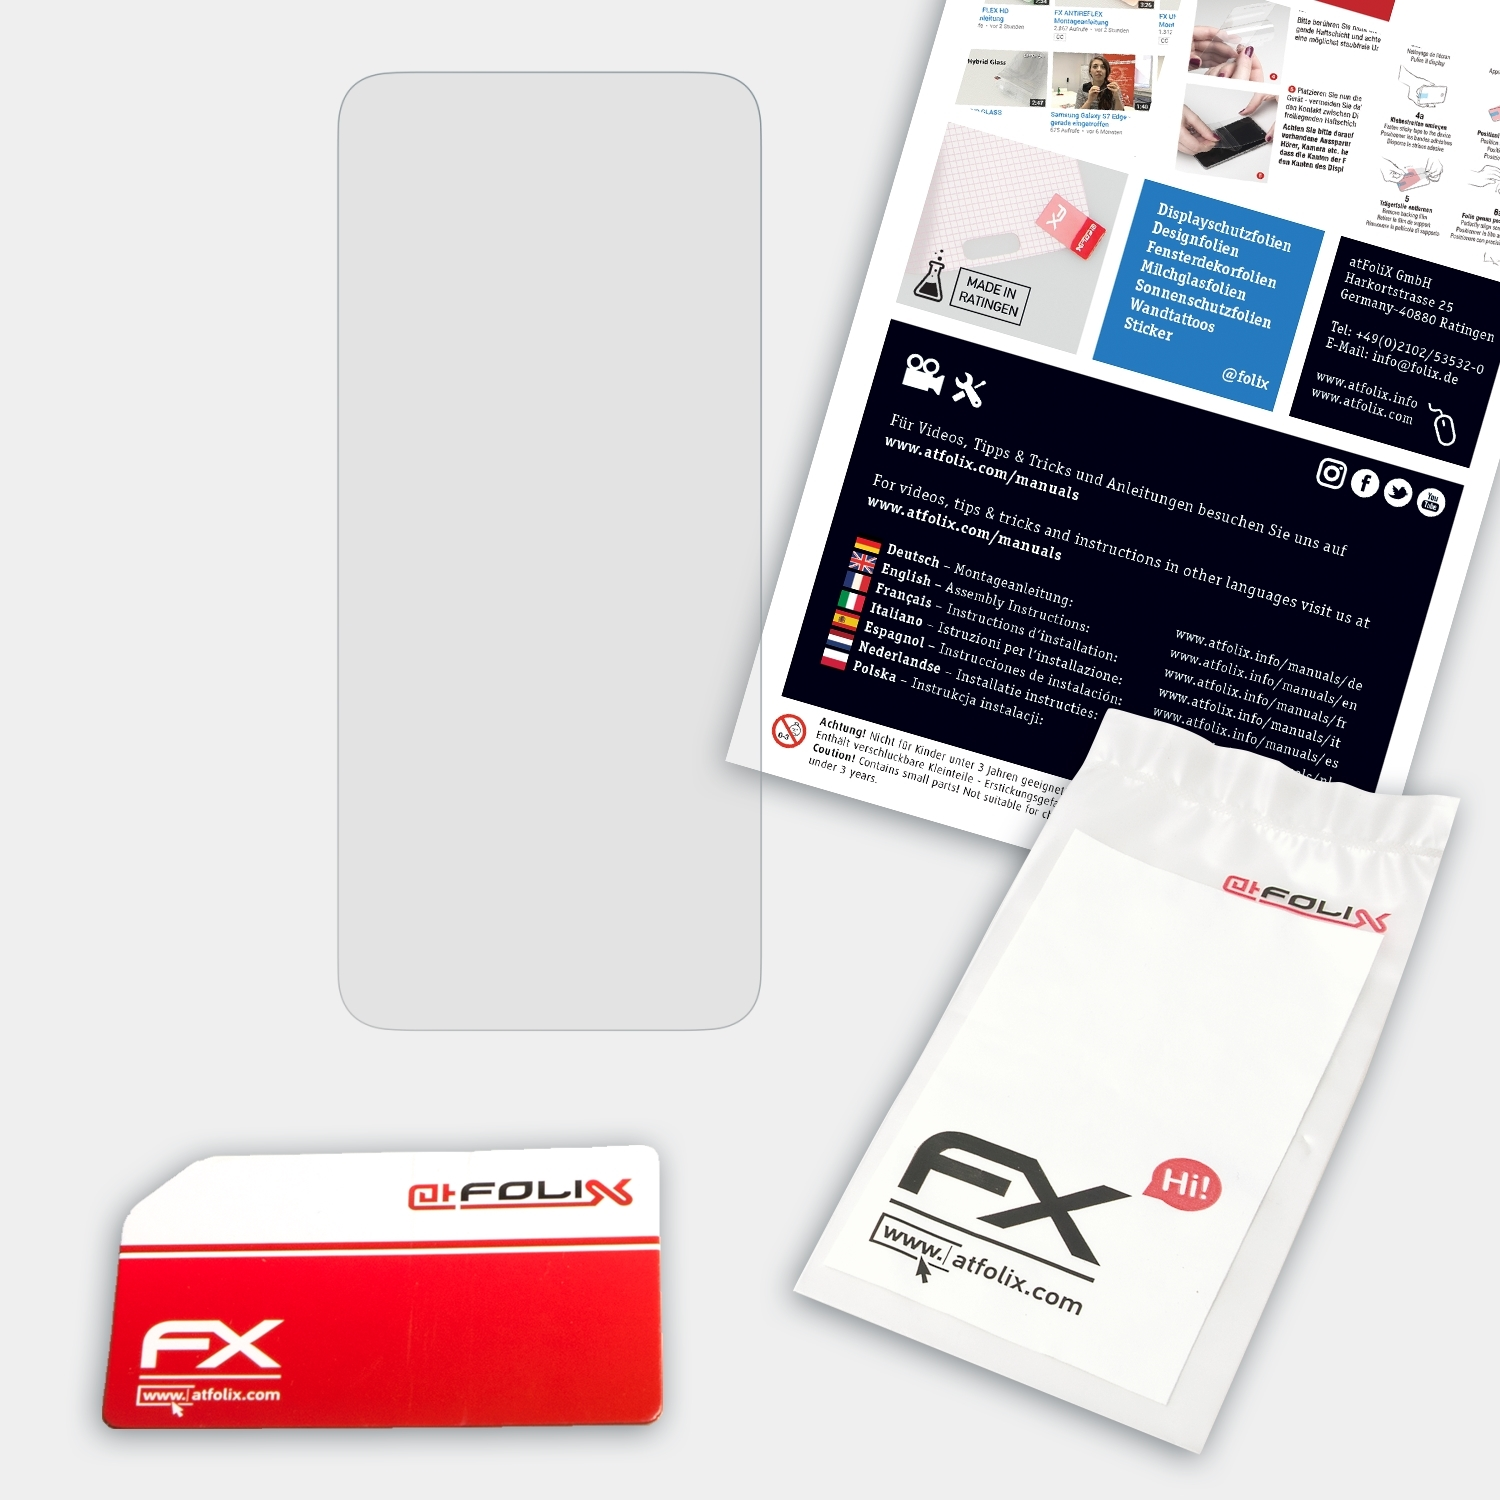 ATFOLIX FX-Hybrid-Glass Pro) Poco F2 Xiaomi Schutzglas(für